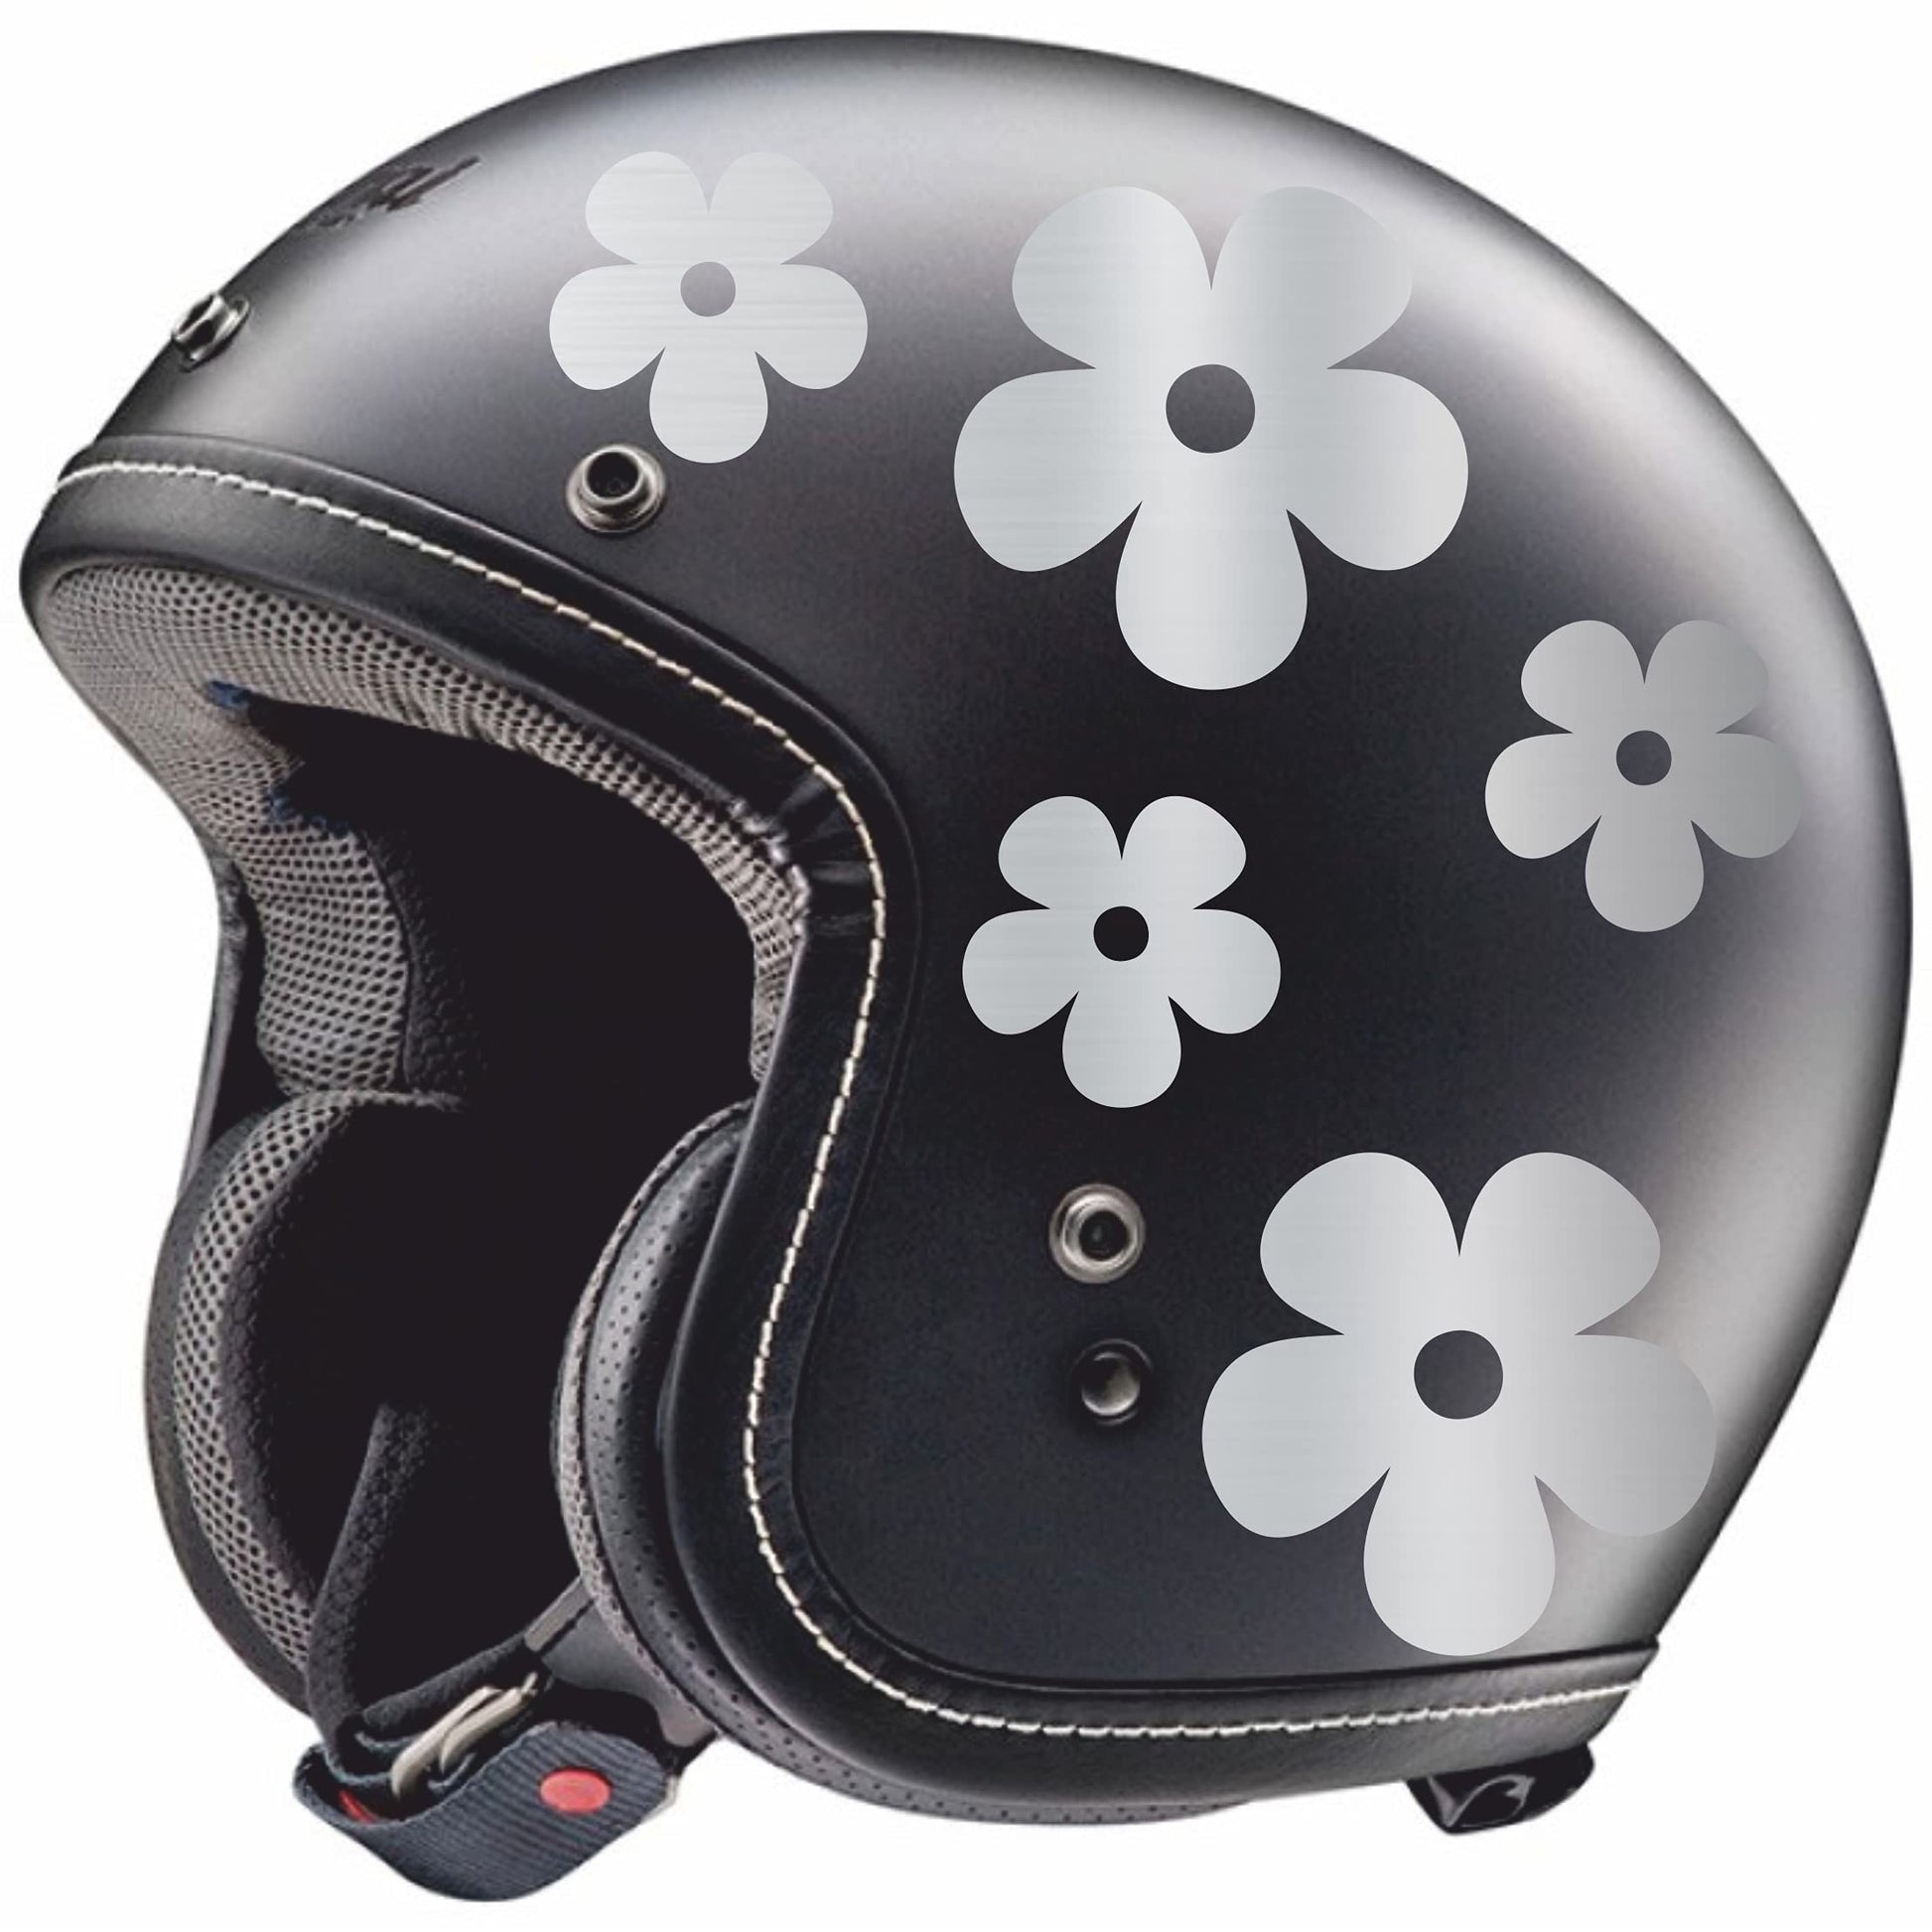 Adhesivo -CASCO MUJER FLORES- decoración para scooter casco coche